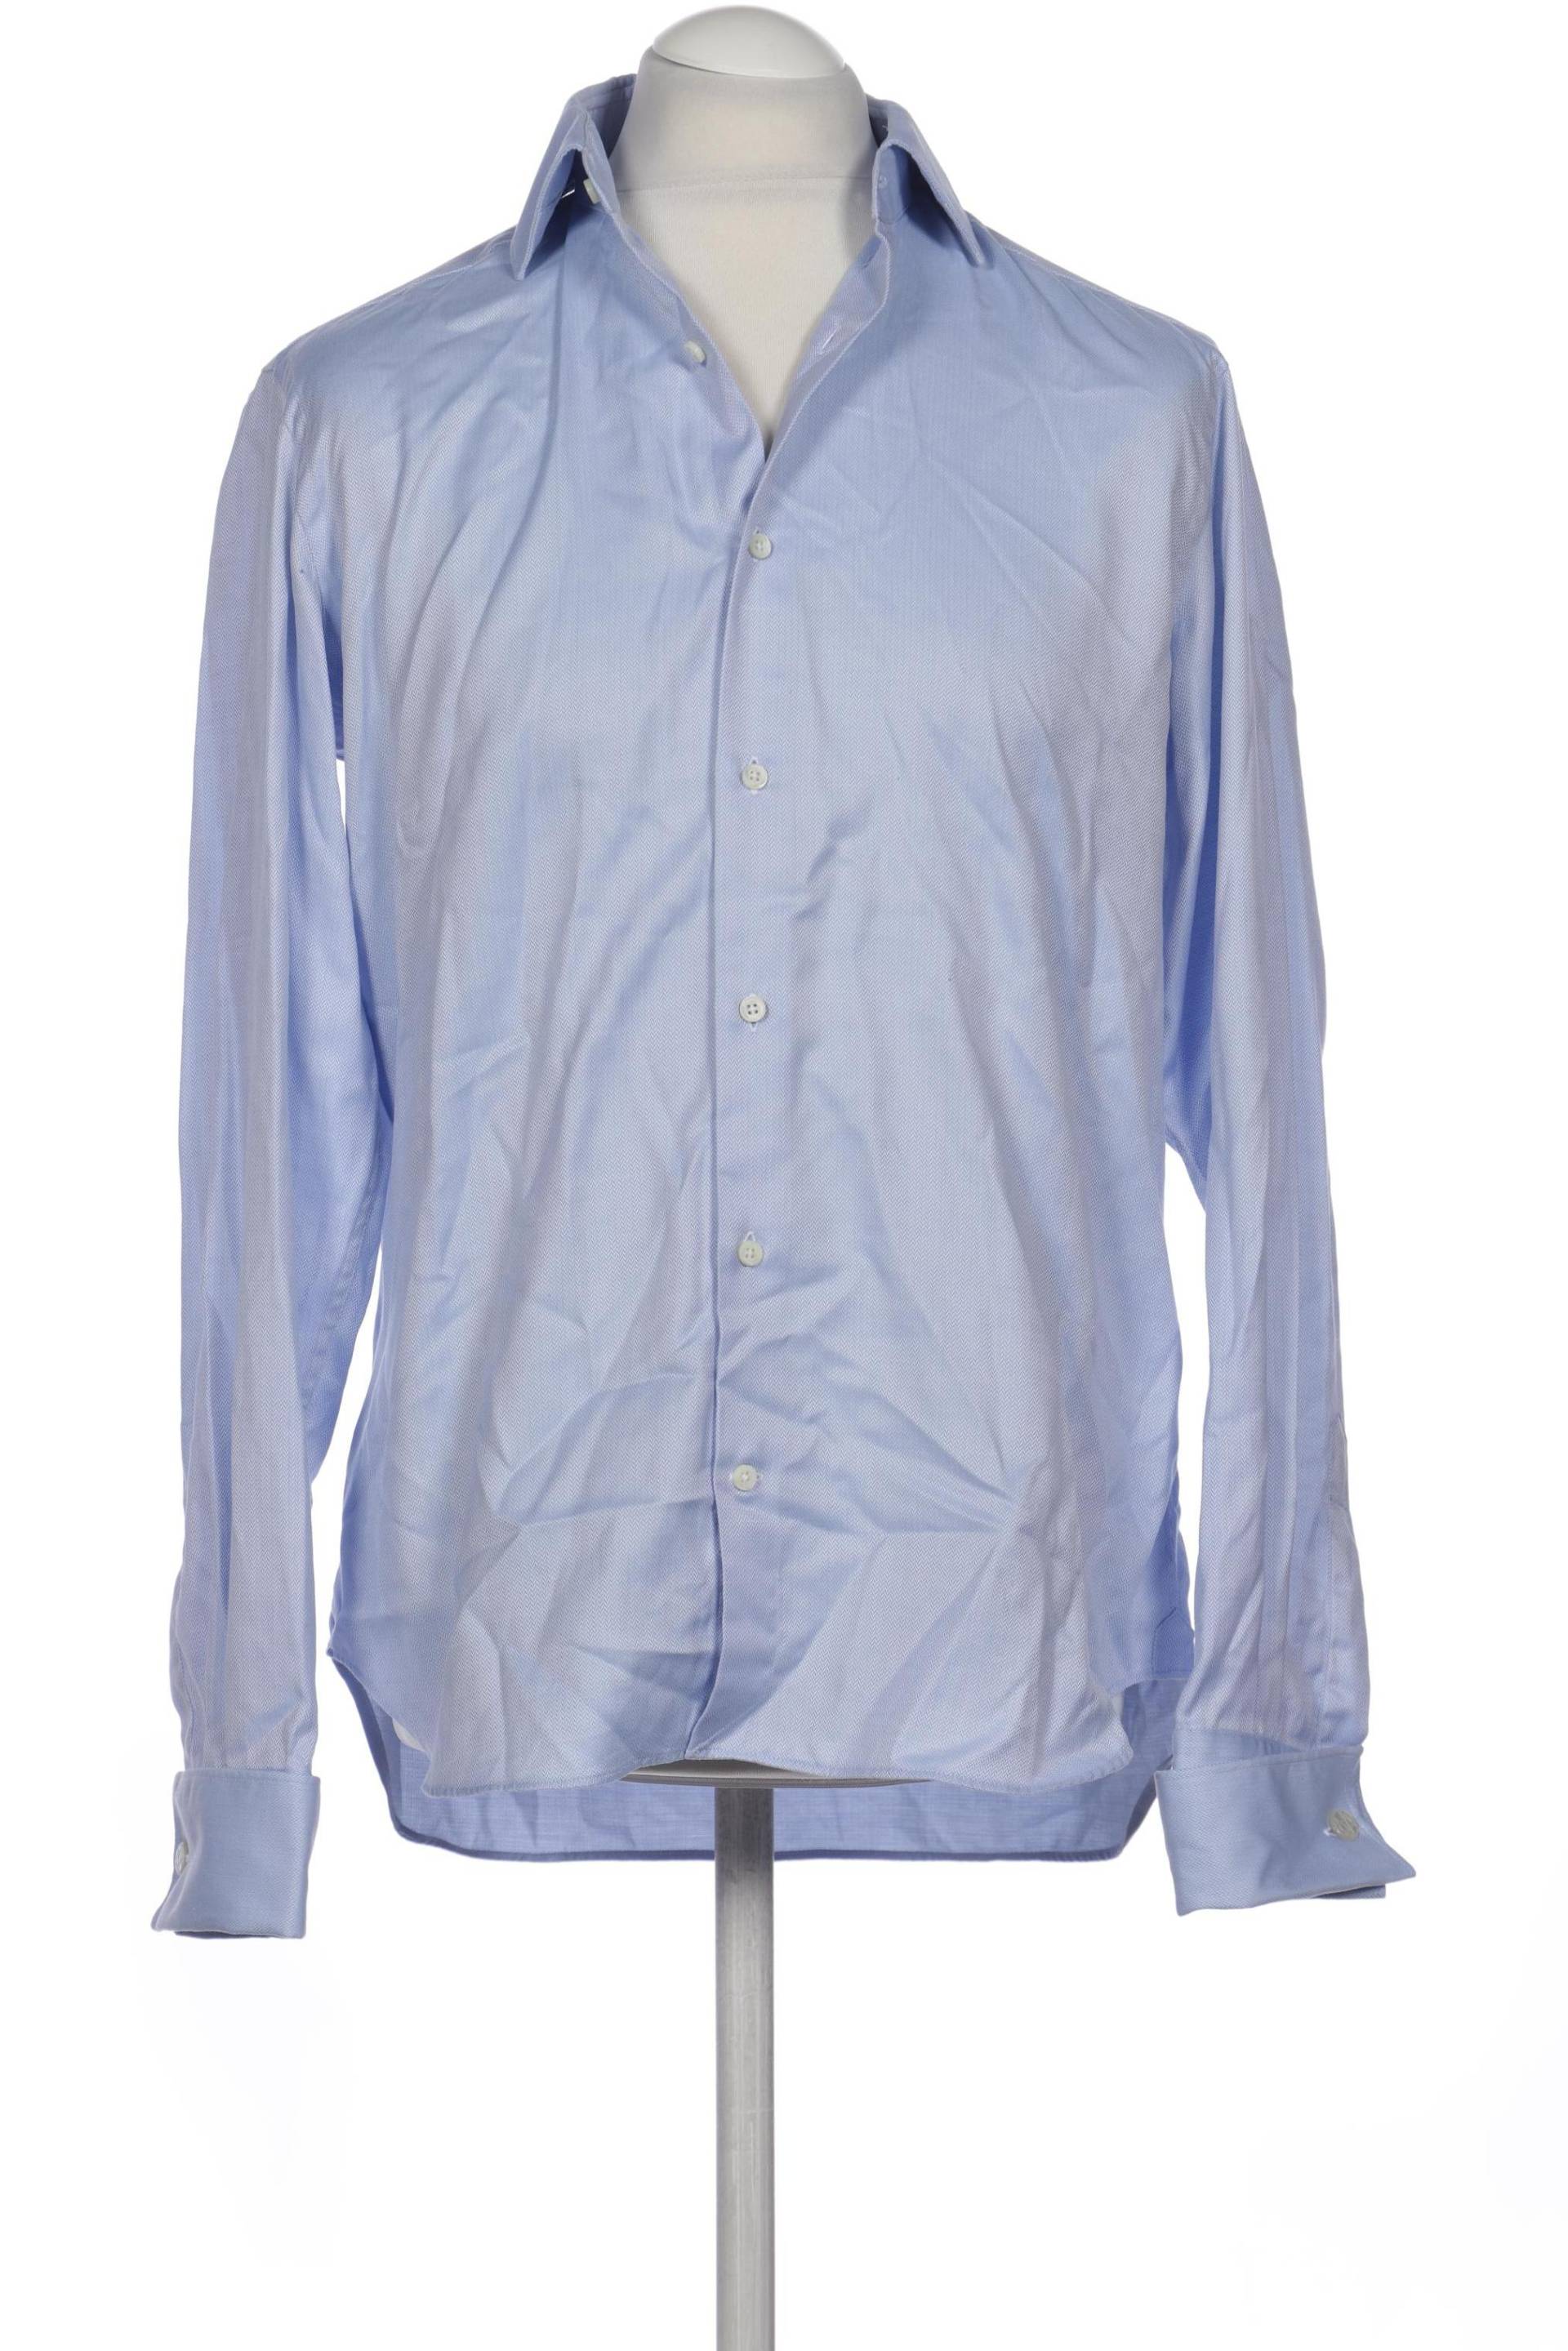 Massimo Dutti Herren Hemd, hellblau von Massimo Dutti